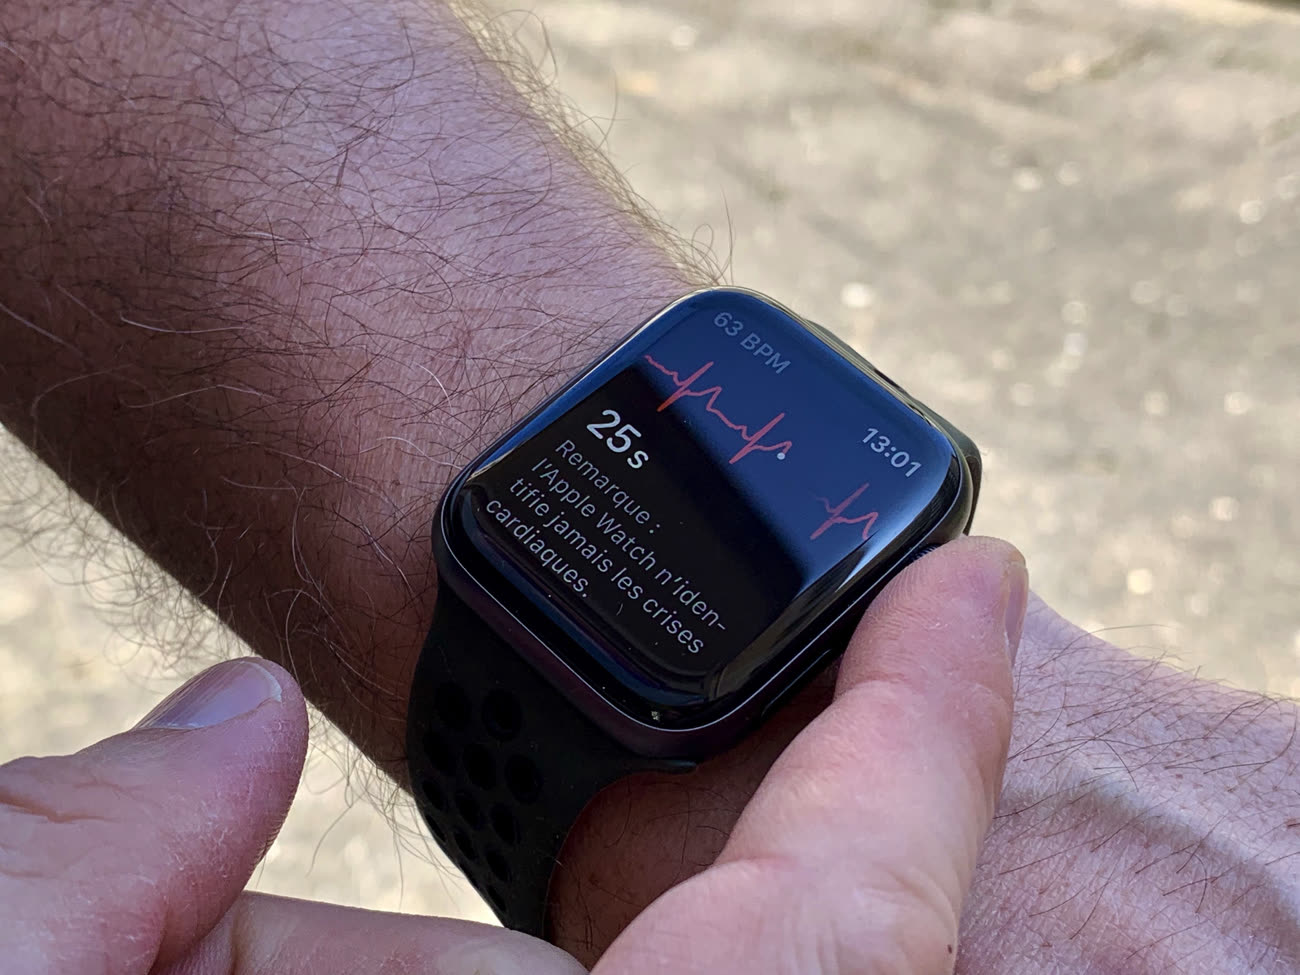 C'est désormais officiel, l'Apple Watch est presque aussi efficace